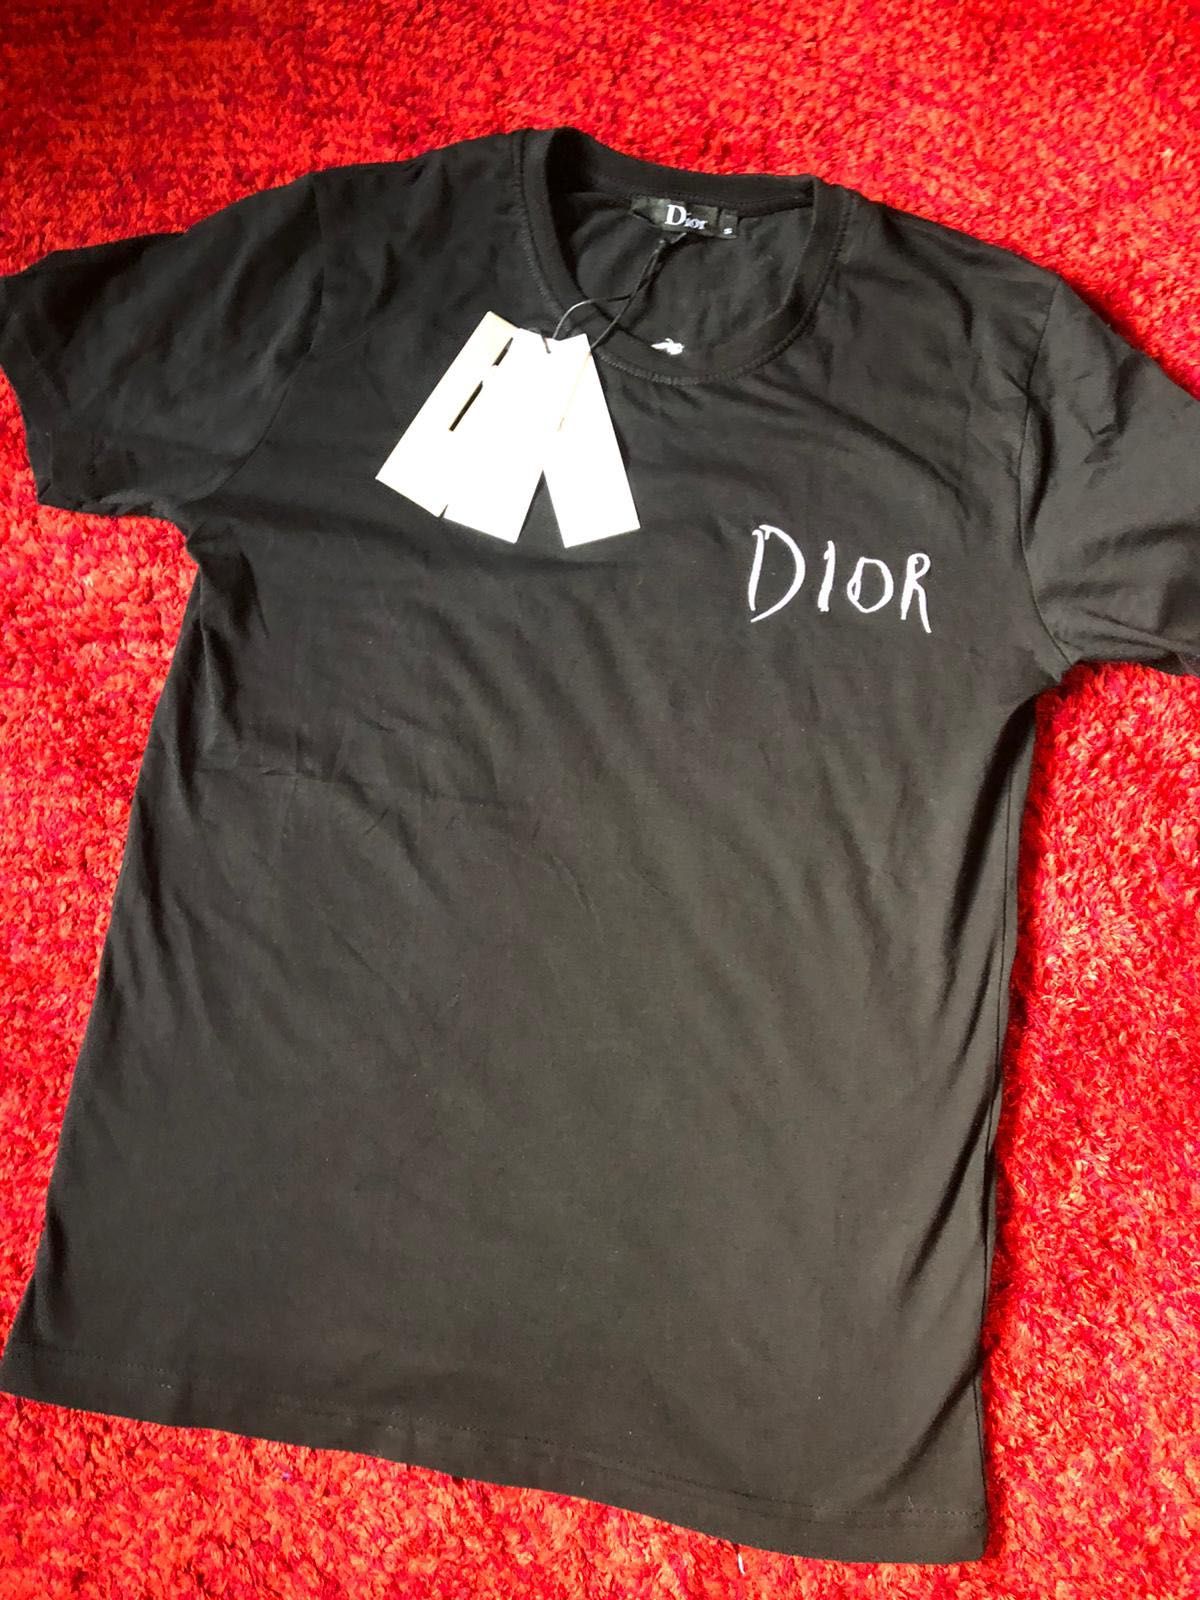 Tricou Christian Dior nou